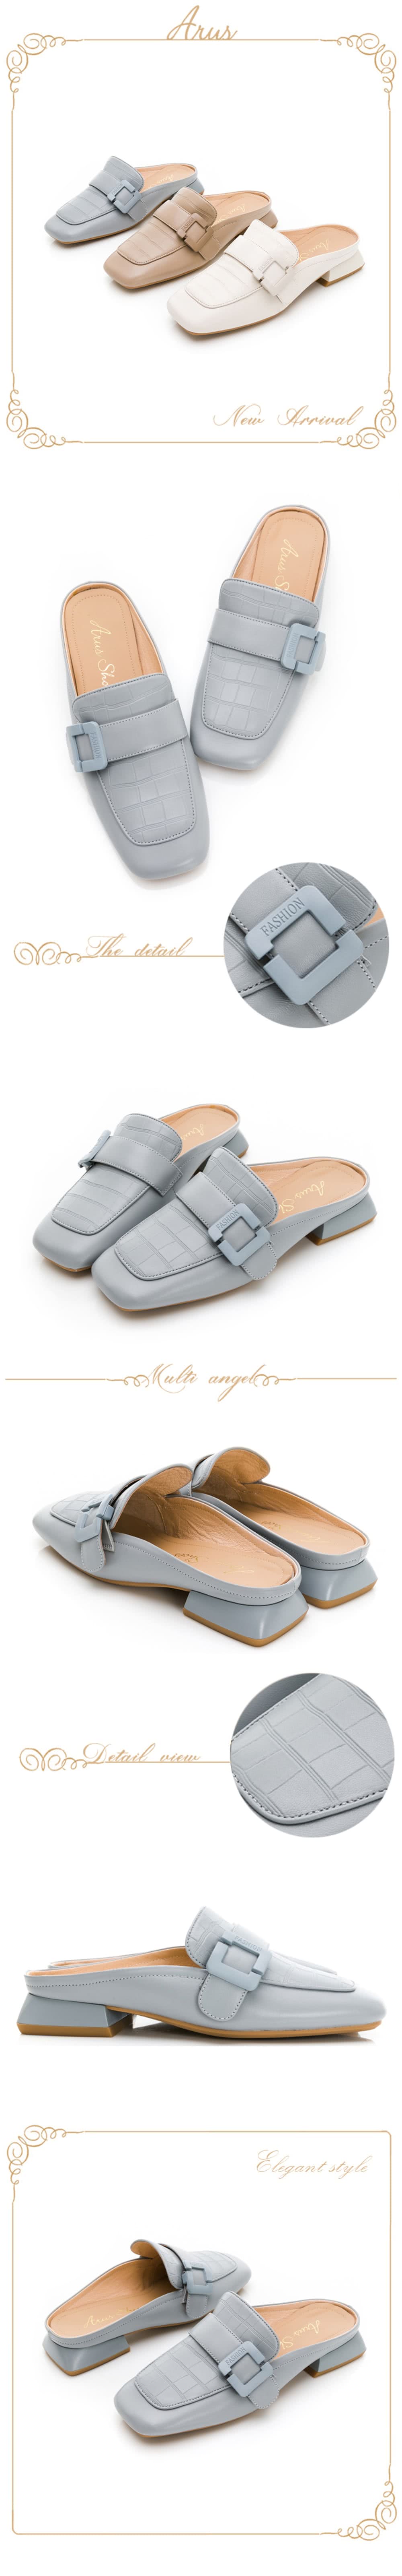 GDC 韓系石紋方頭素色低跟穆勒拖鞋-灰藍色(310221-